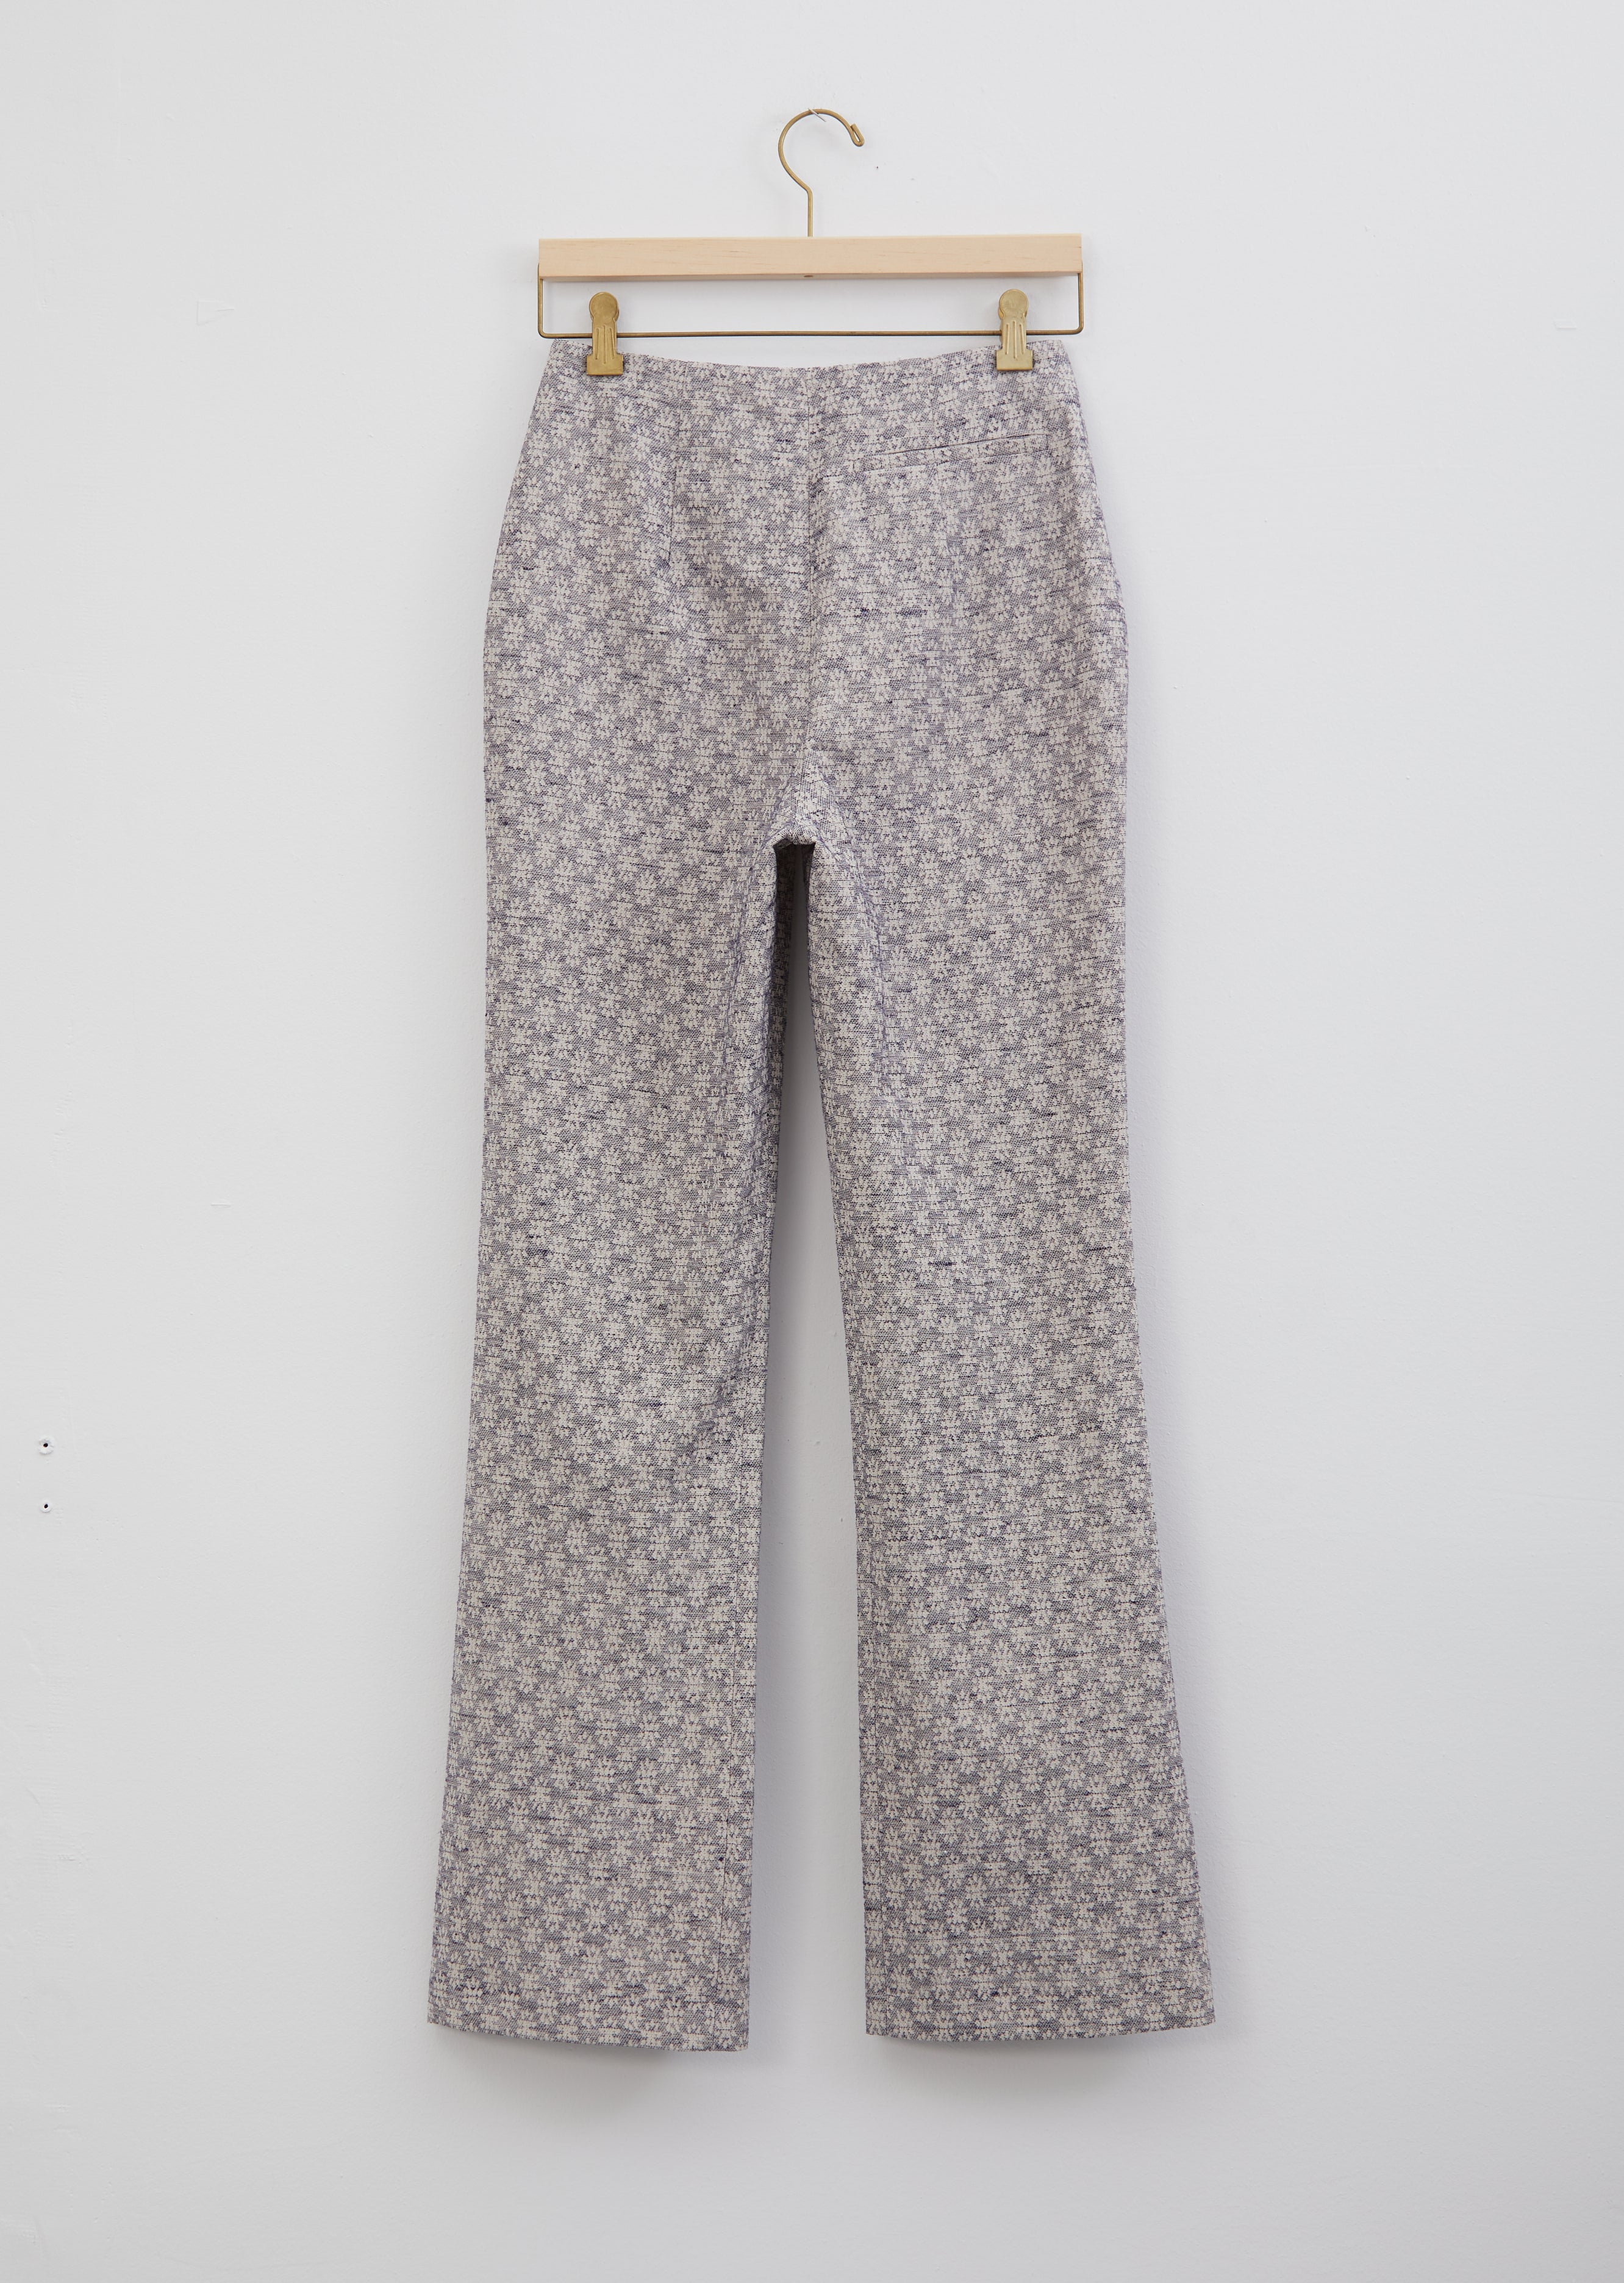 Zara Metallic Floral Jacquard Pants - Size S – The Shop District